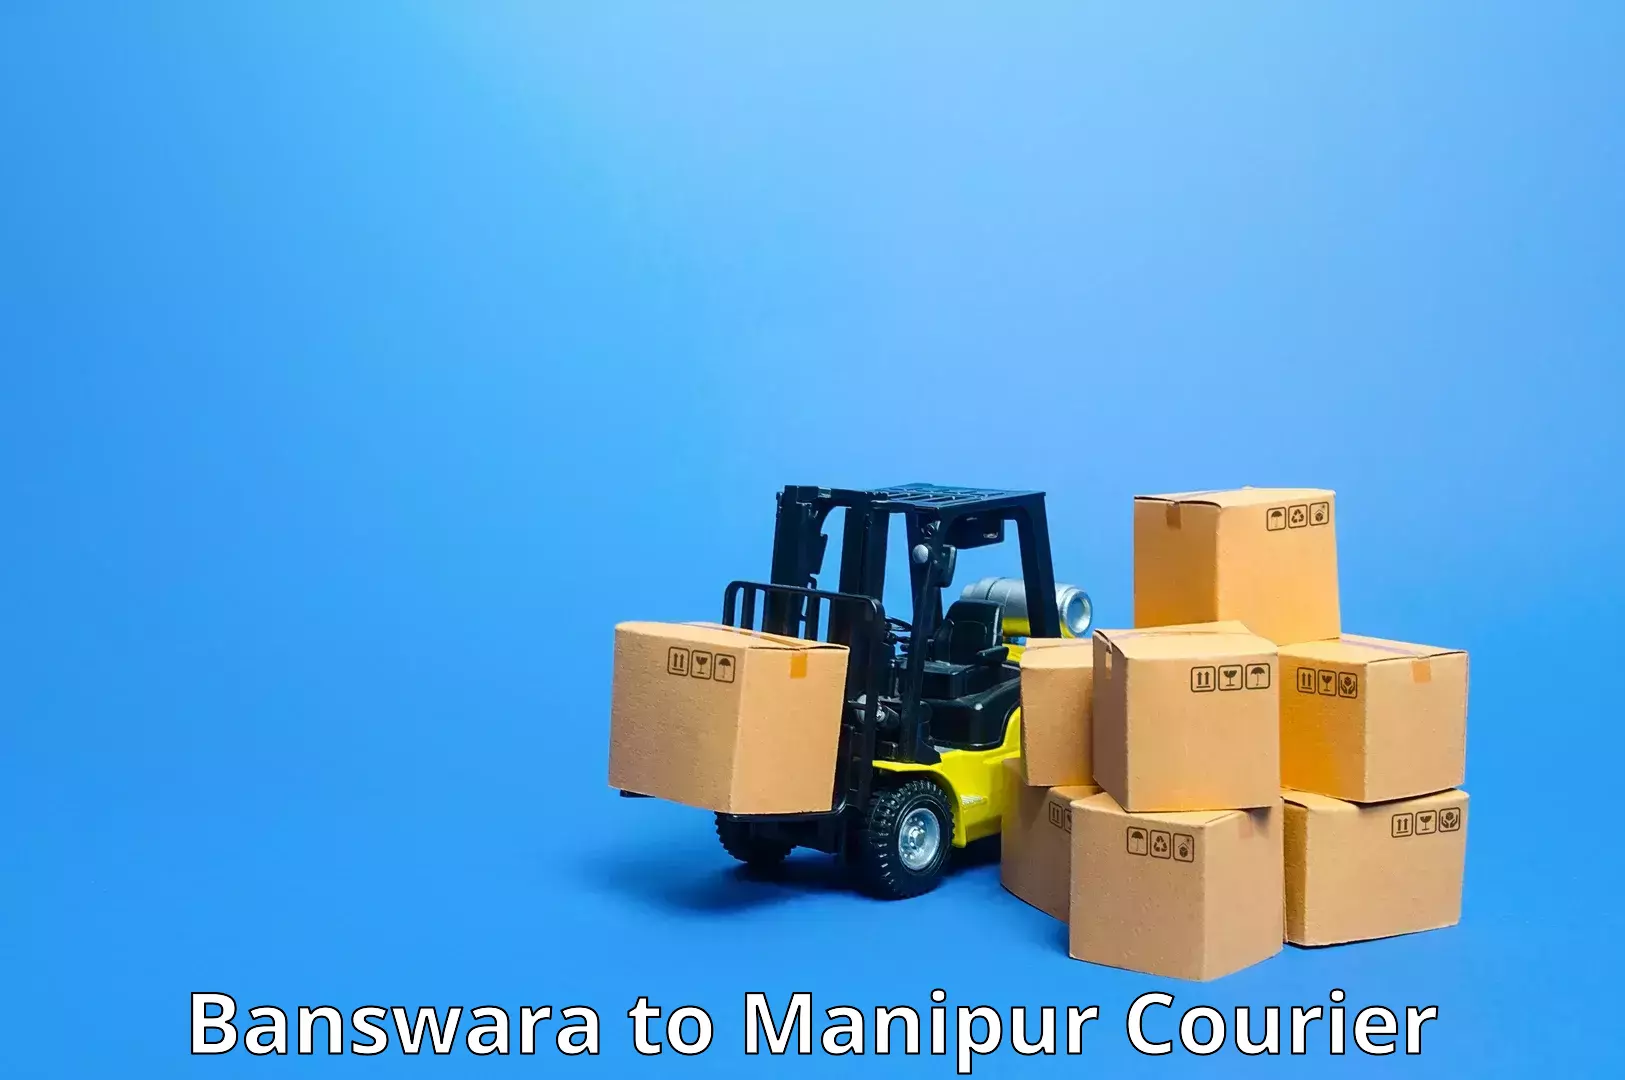 Fast delivery service Banswara to Moirang